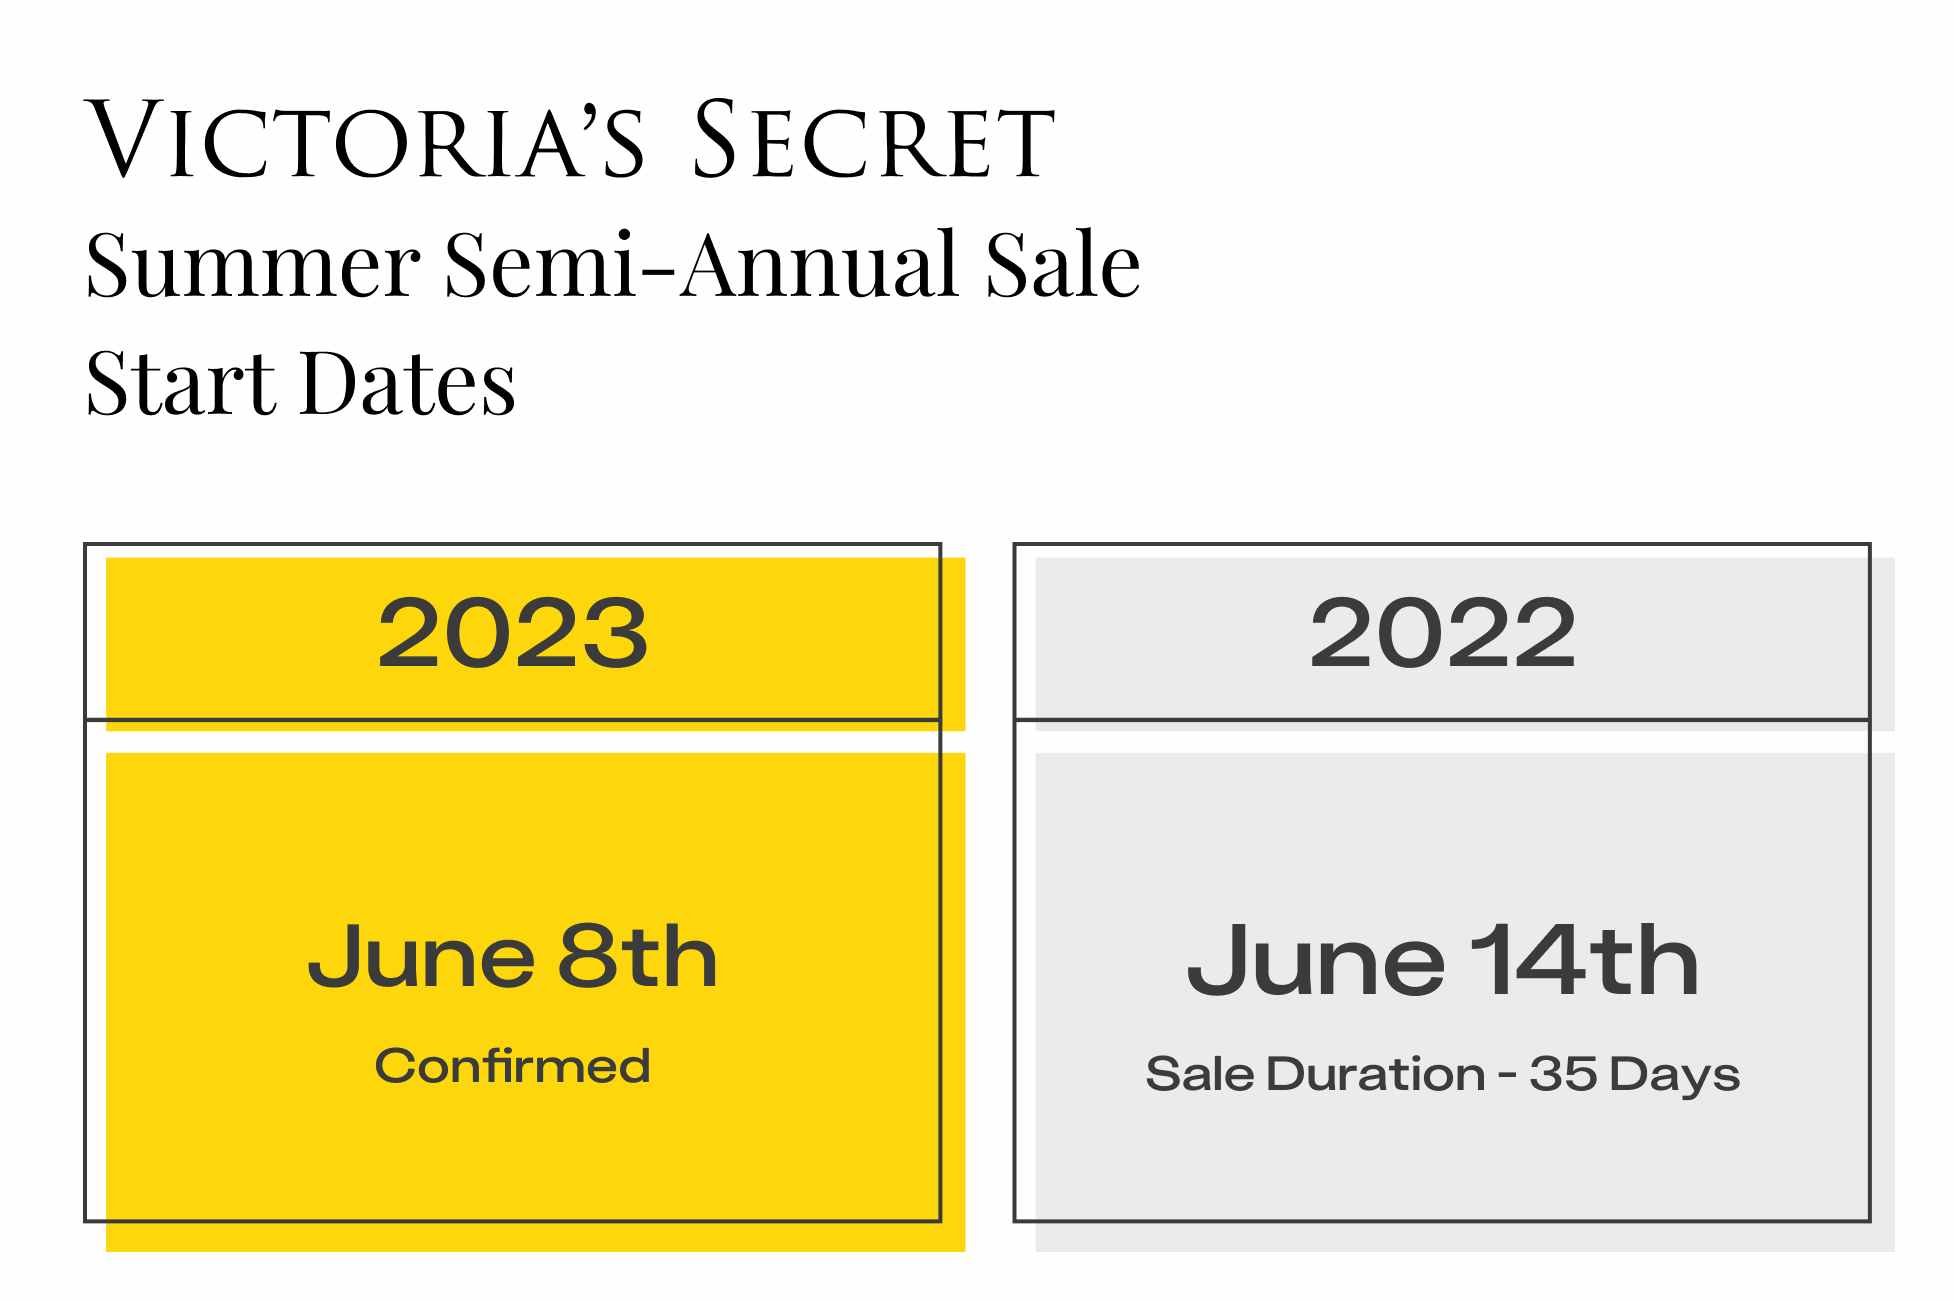 When is Victoria's Secret Semi-Annual Sale 2023?